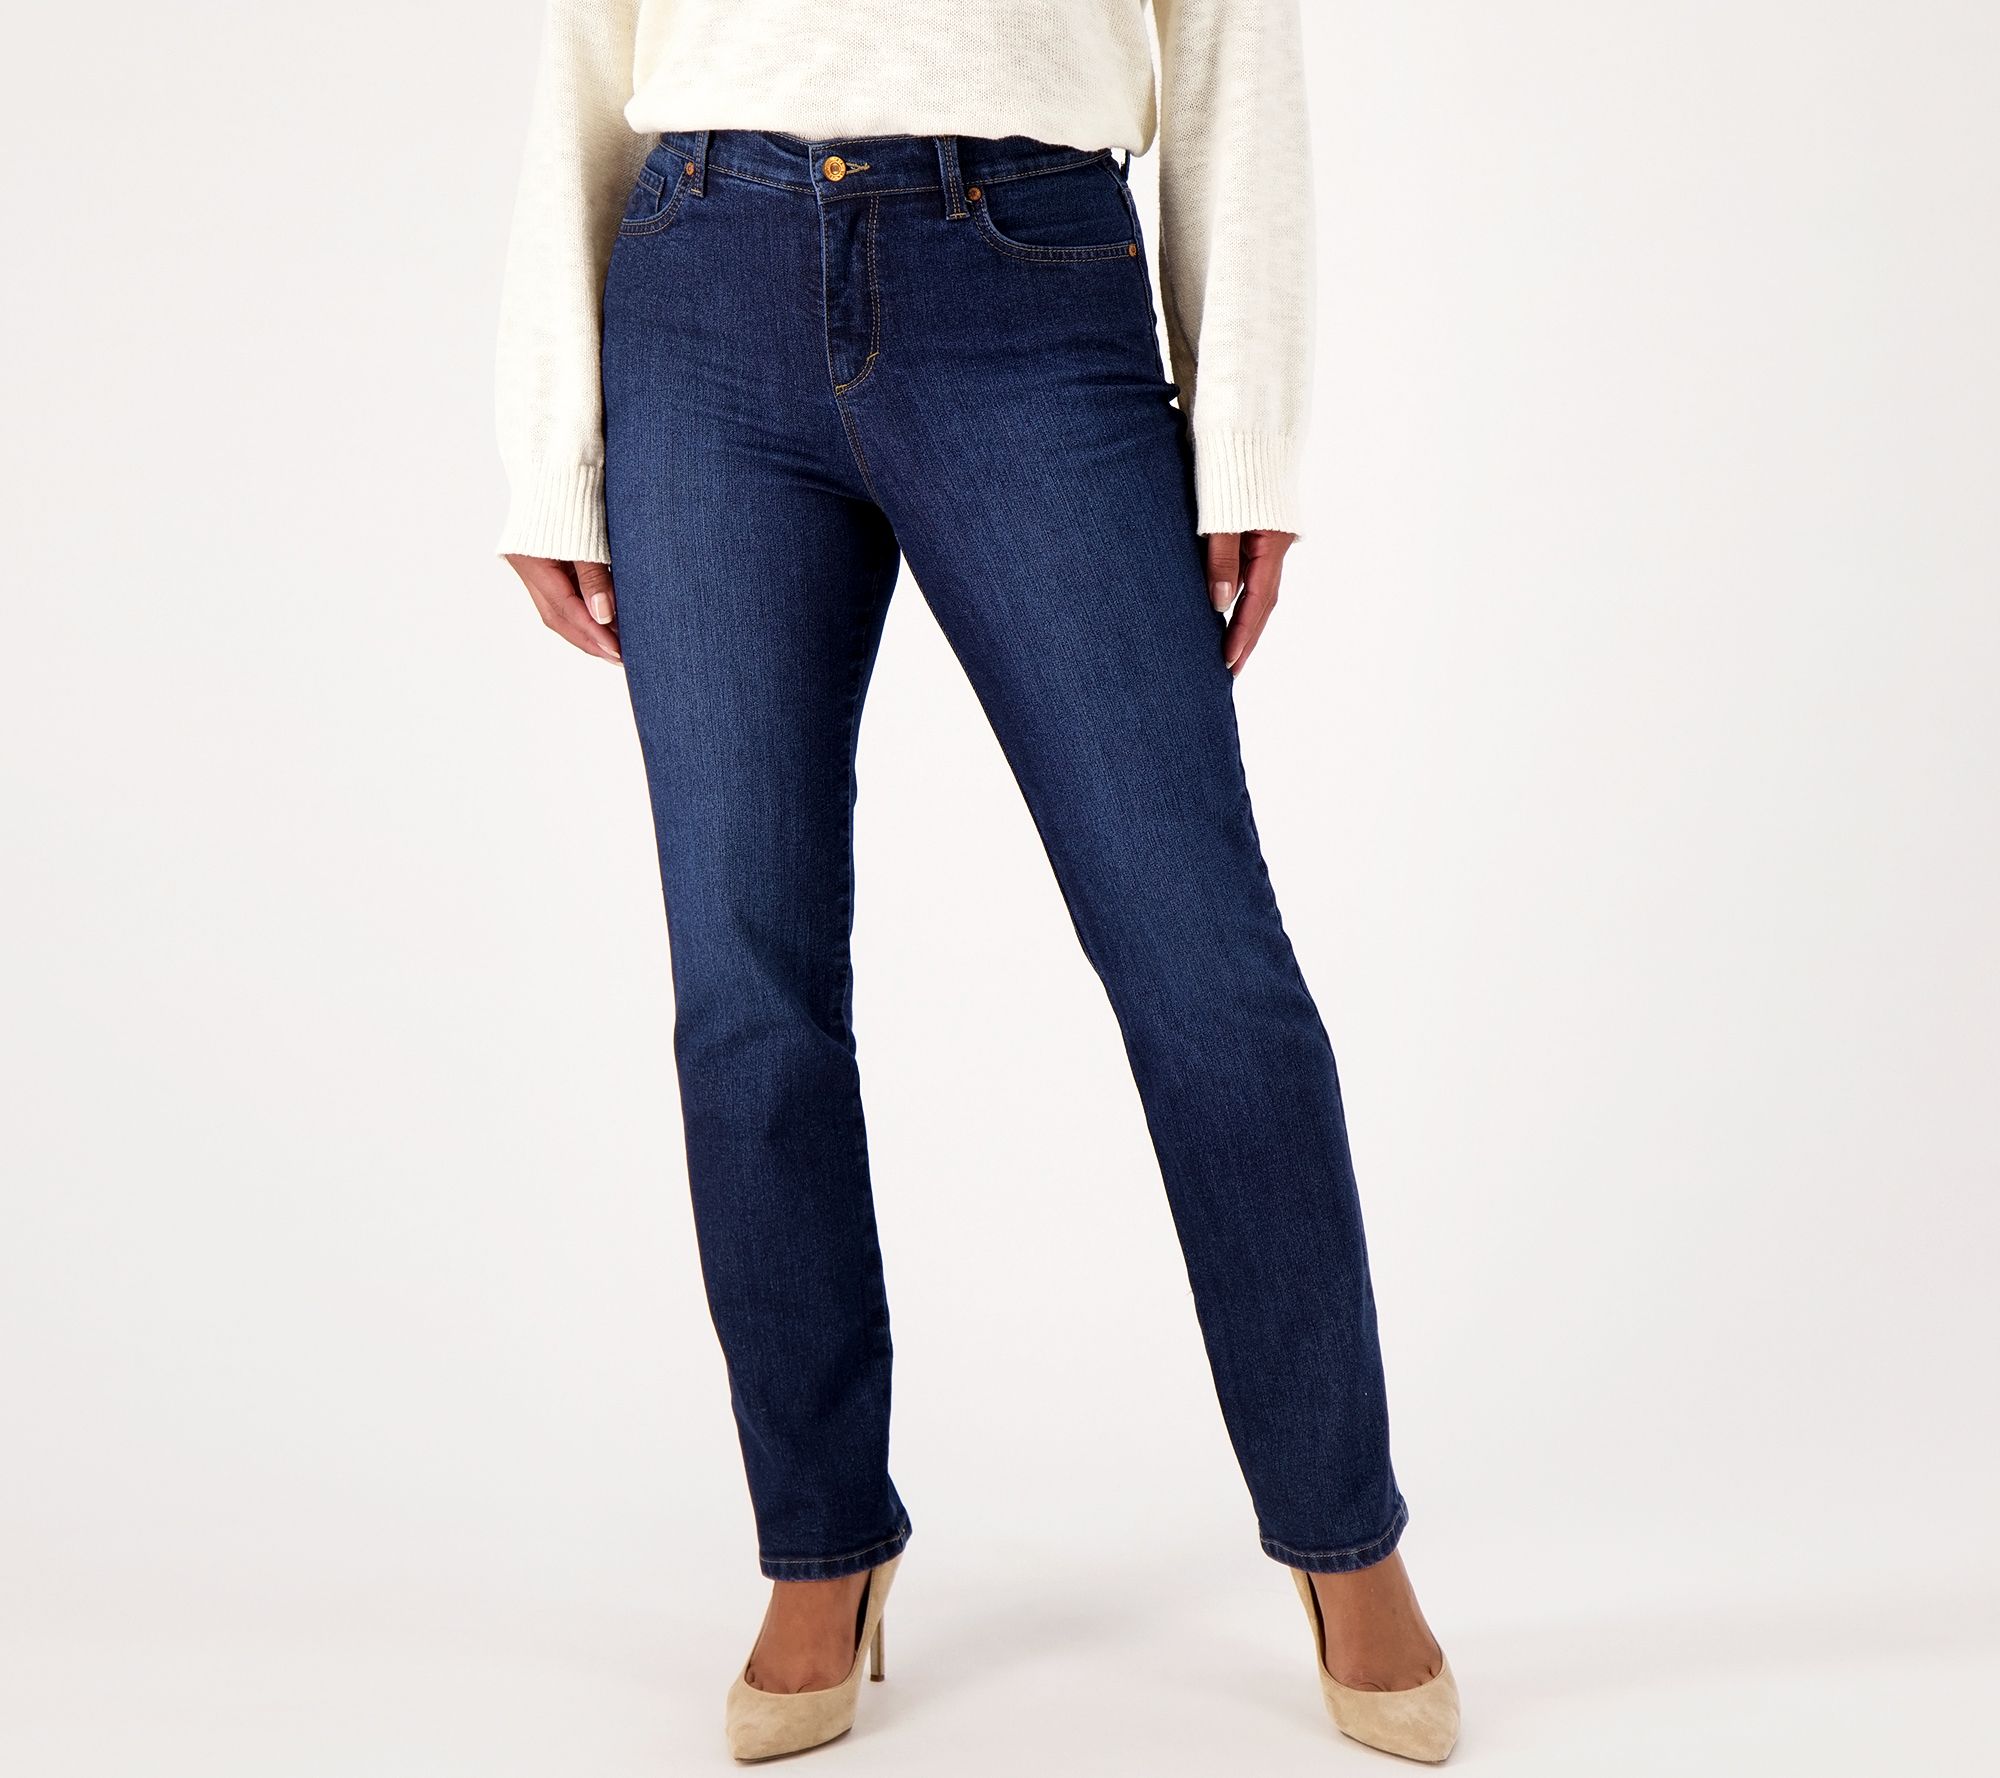 Women's Gloria Vanderbilt Amanda Classic Jeans